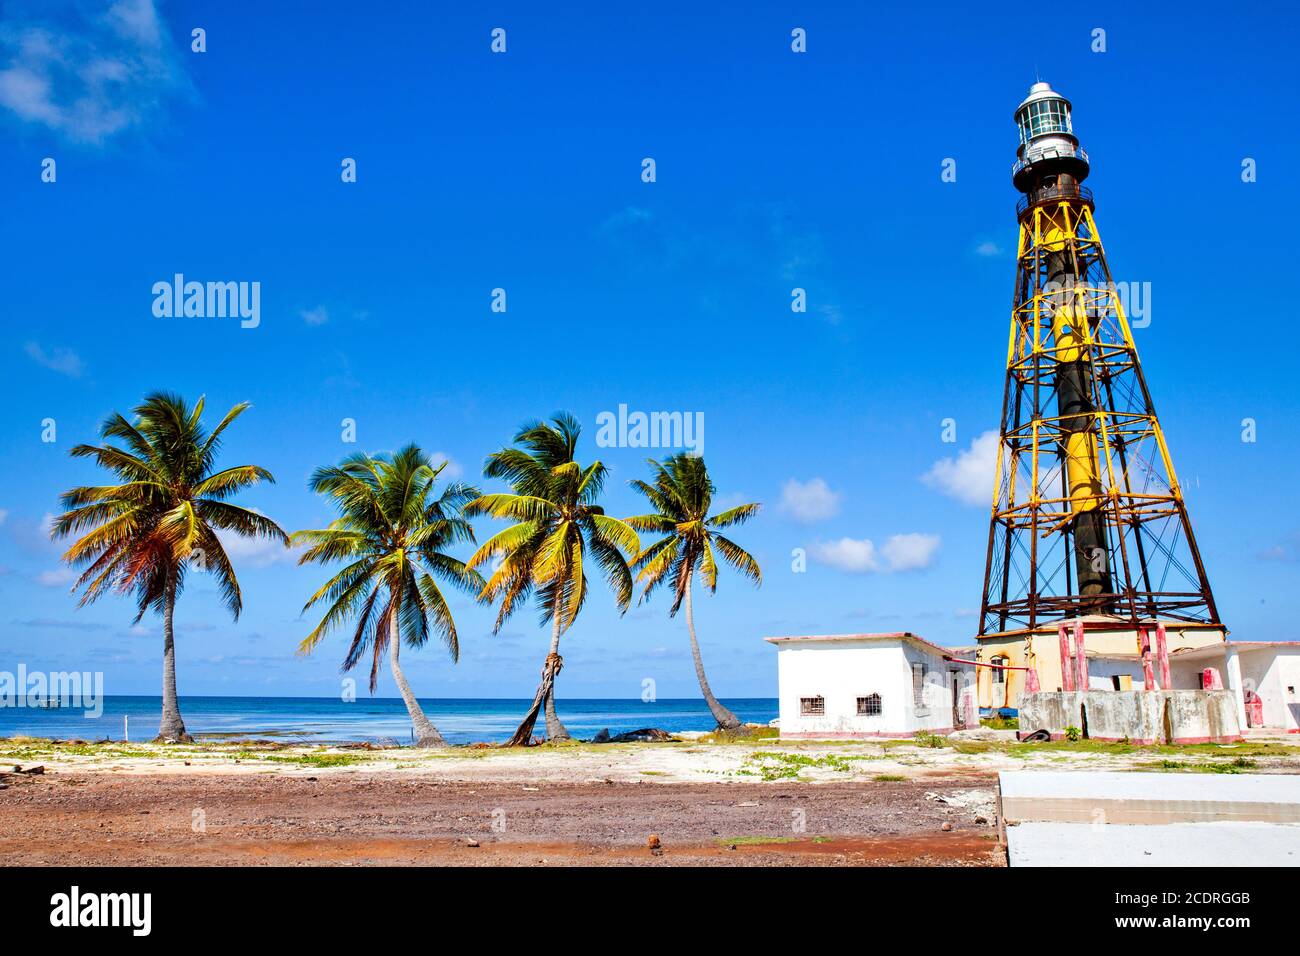 Faro en la playa Cayo Jutias, provincia Pinar del Rio, Cuba. Foto de stock